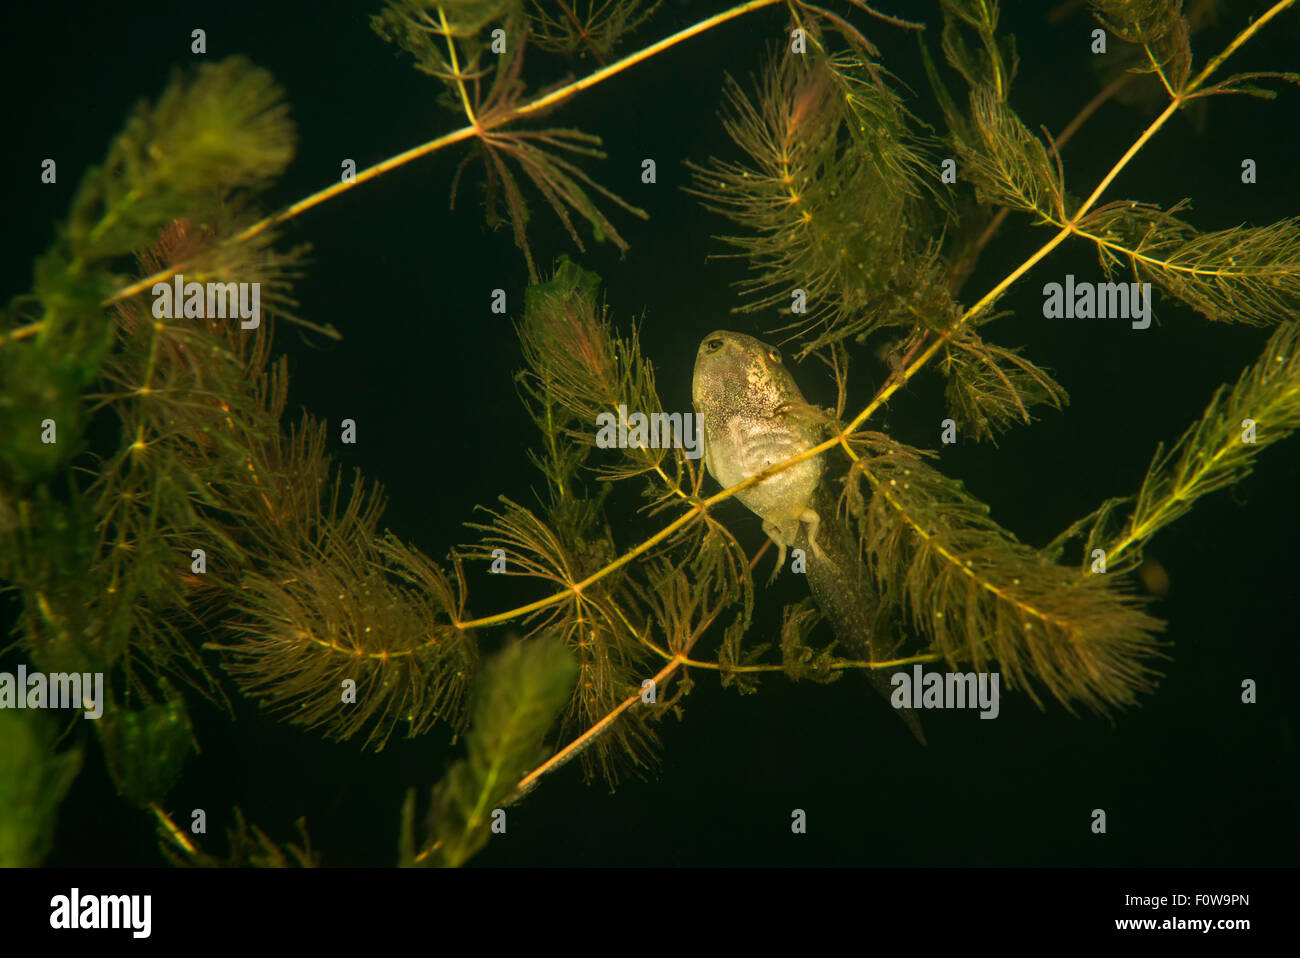 Pool frog tadpole (Pelophylax lessonae) in Soft hornwort (Ceratophyllum submersum) underwater, Danube Delta, Romania, June. Stock Photo